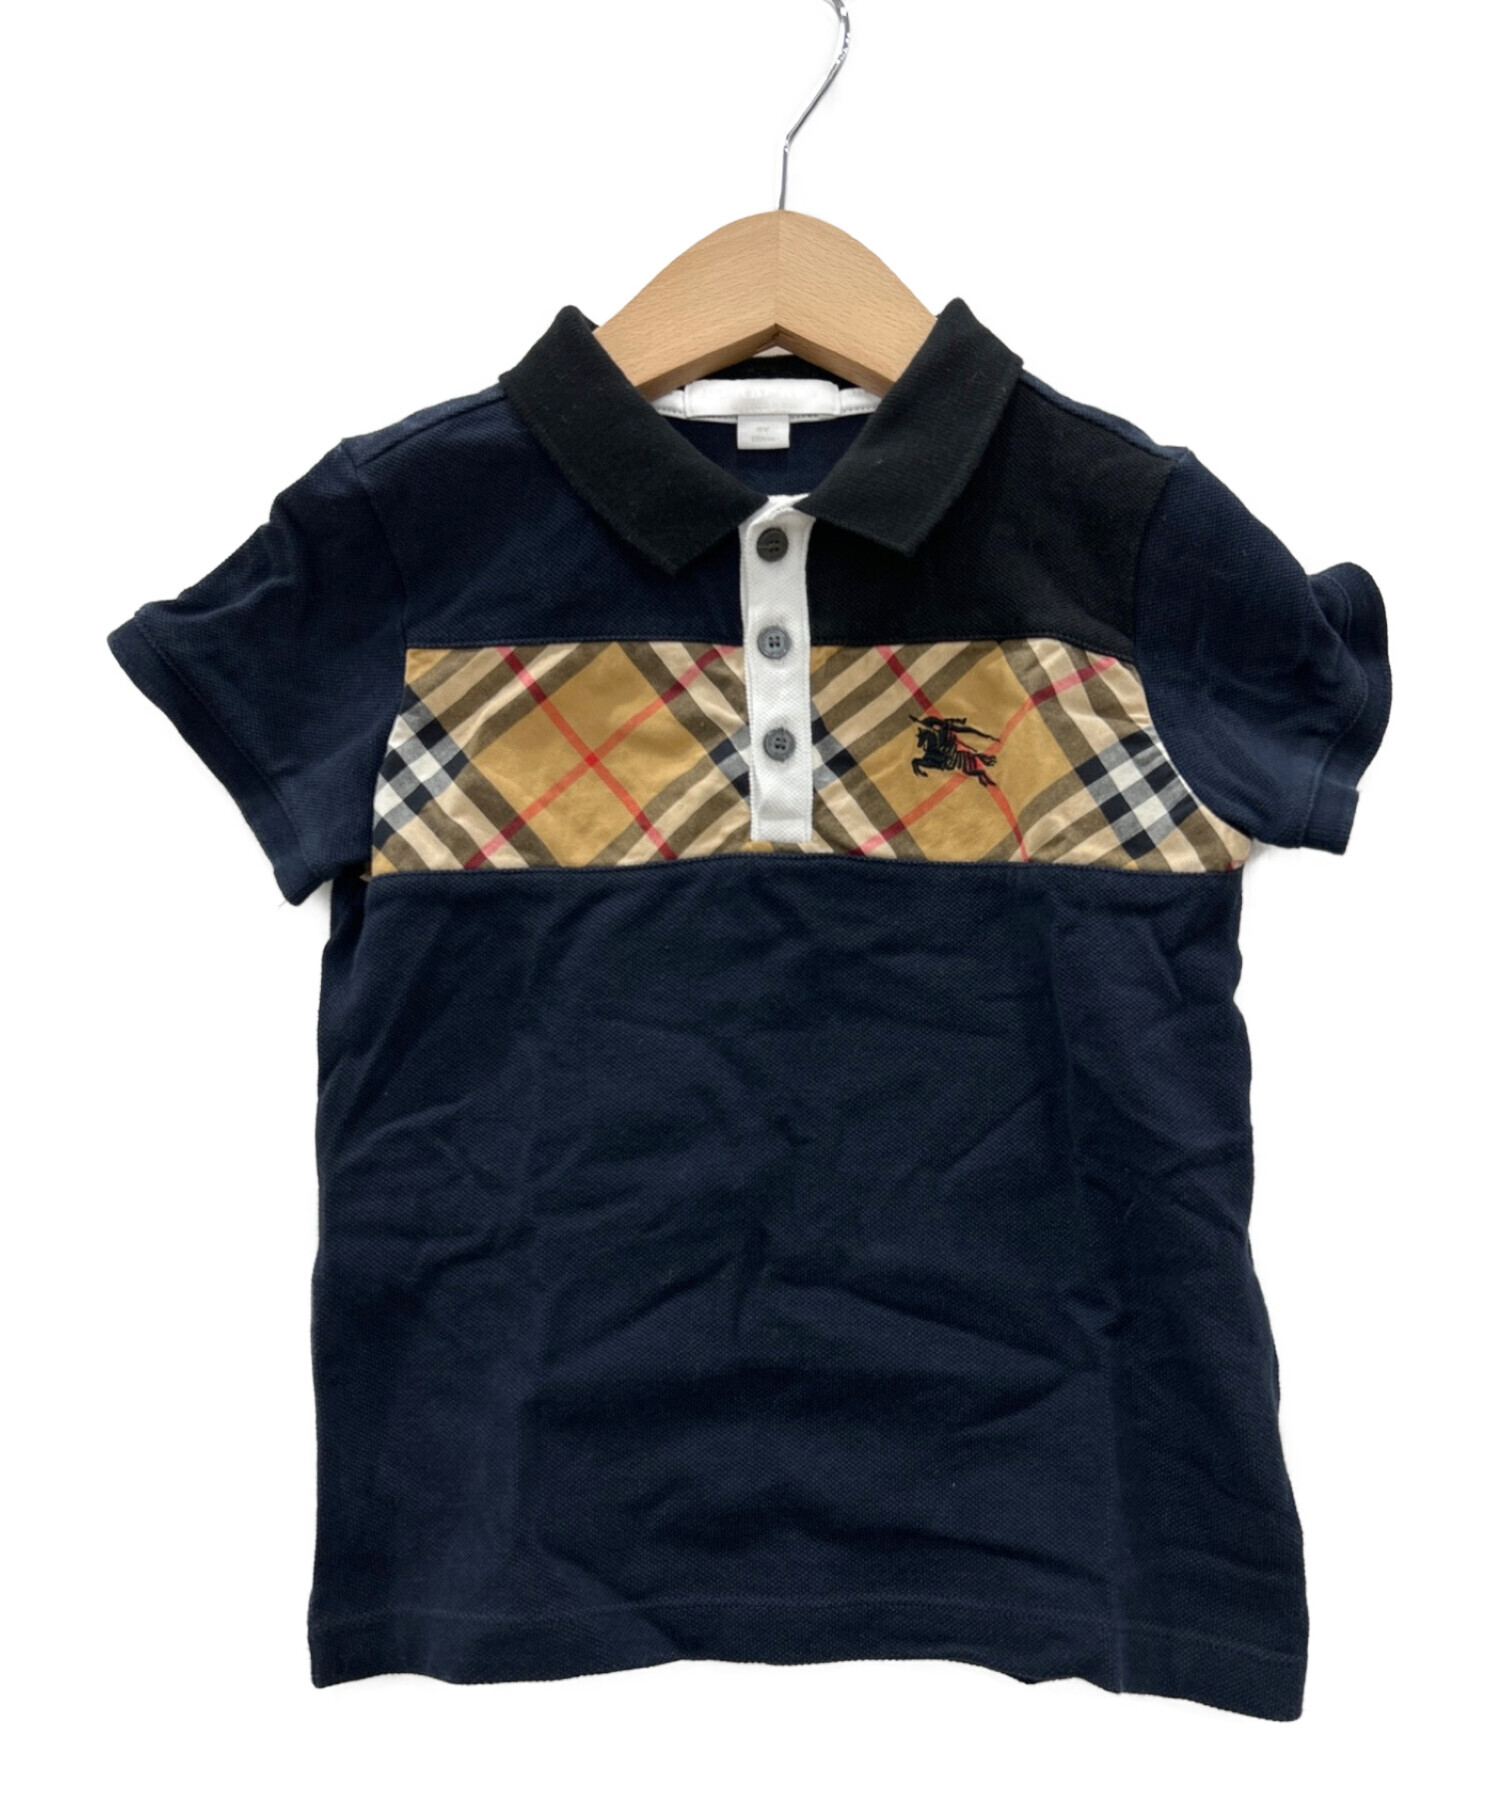 Tシャツ/カットソー新品 バーバリーチルドレン ポロシャツ 4Y 104cm 黒 ブラック